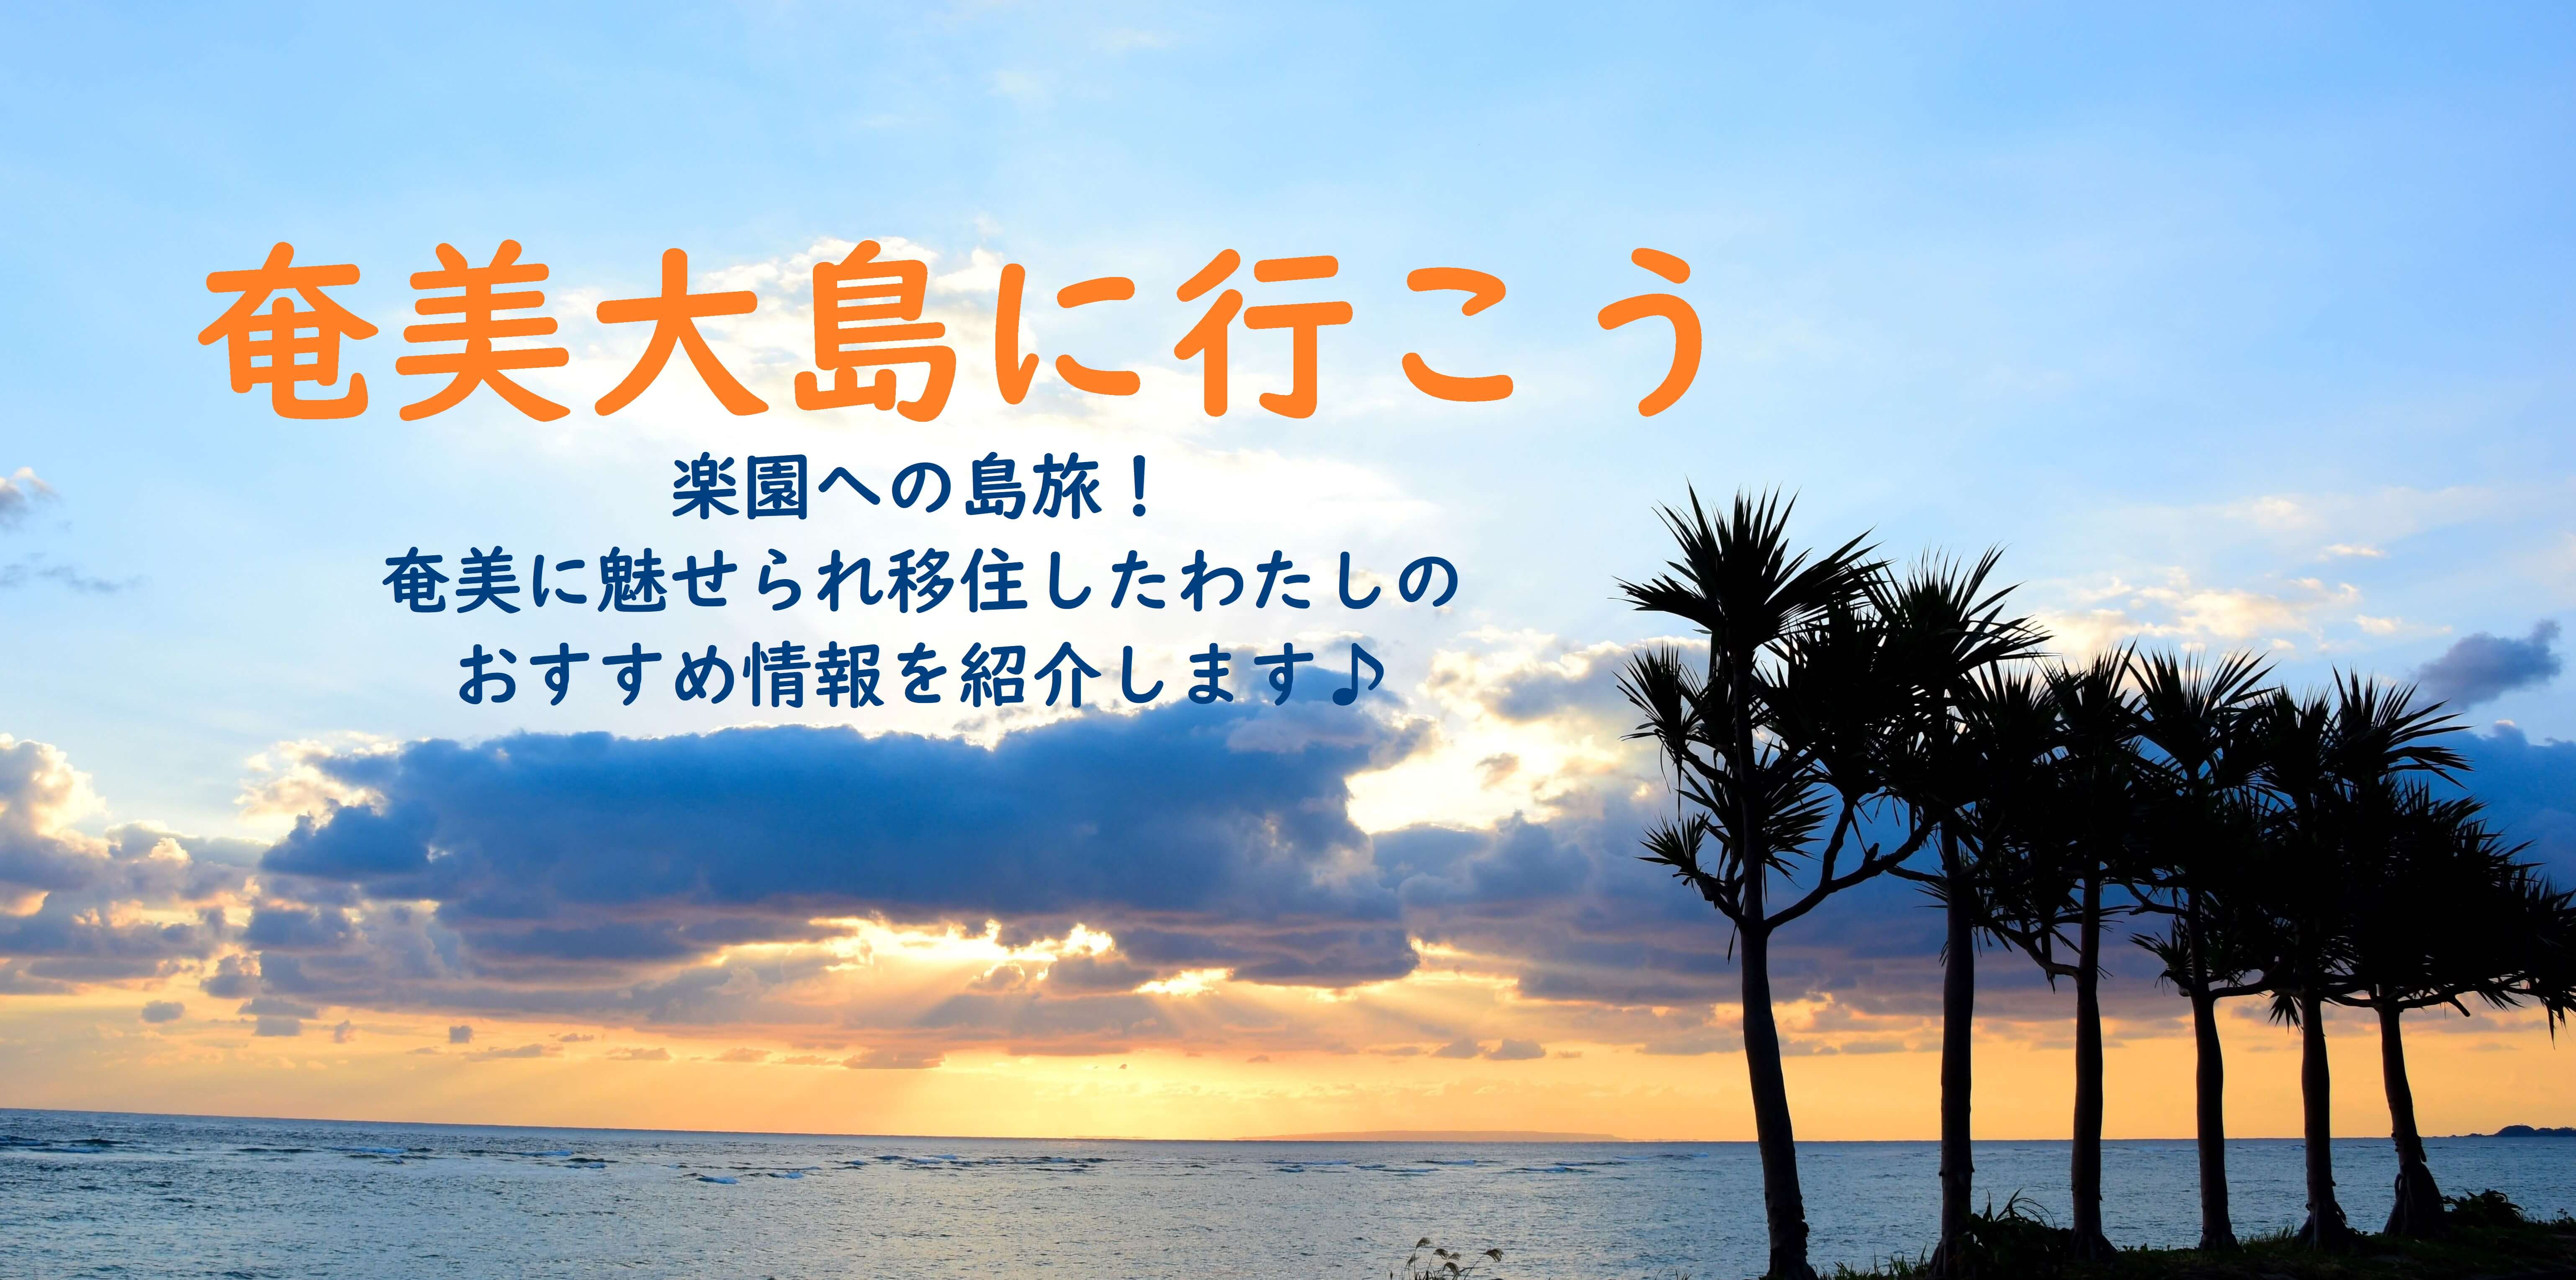 真夏の奄美大島3泊4日旅行記 海から伝統文化まで大充実のモデルコース 奄美大島に行こう